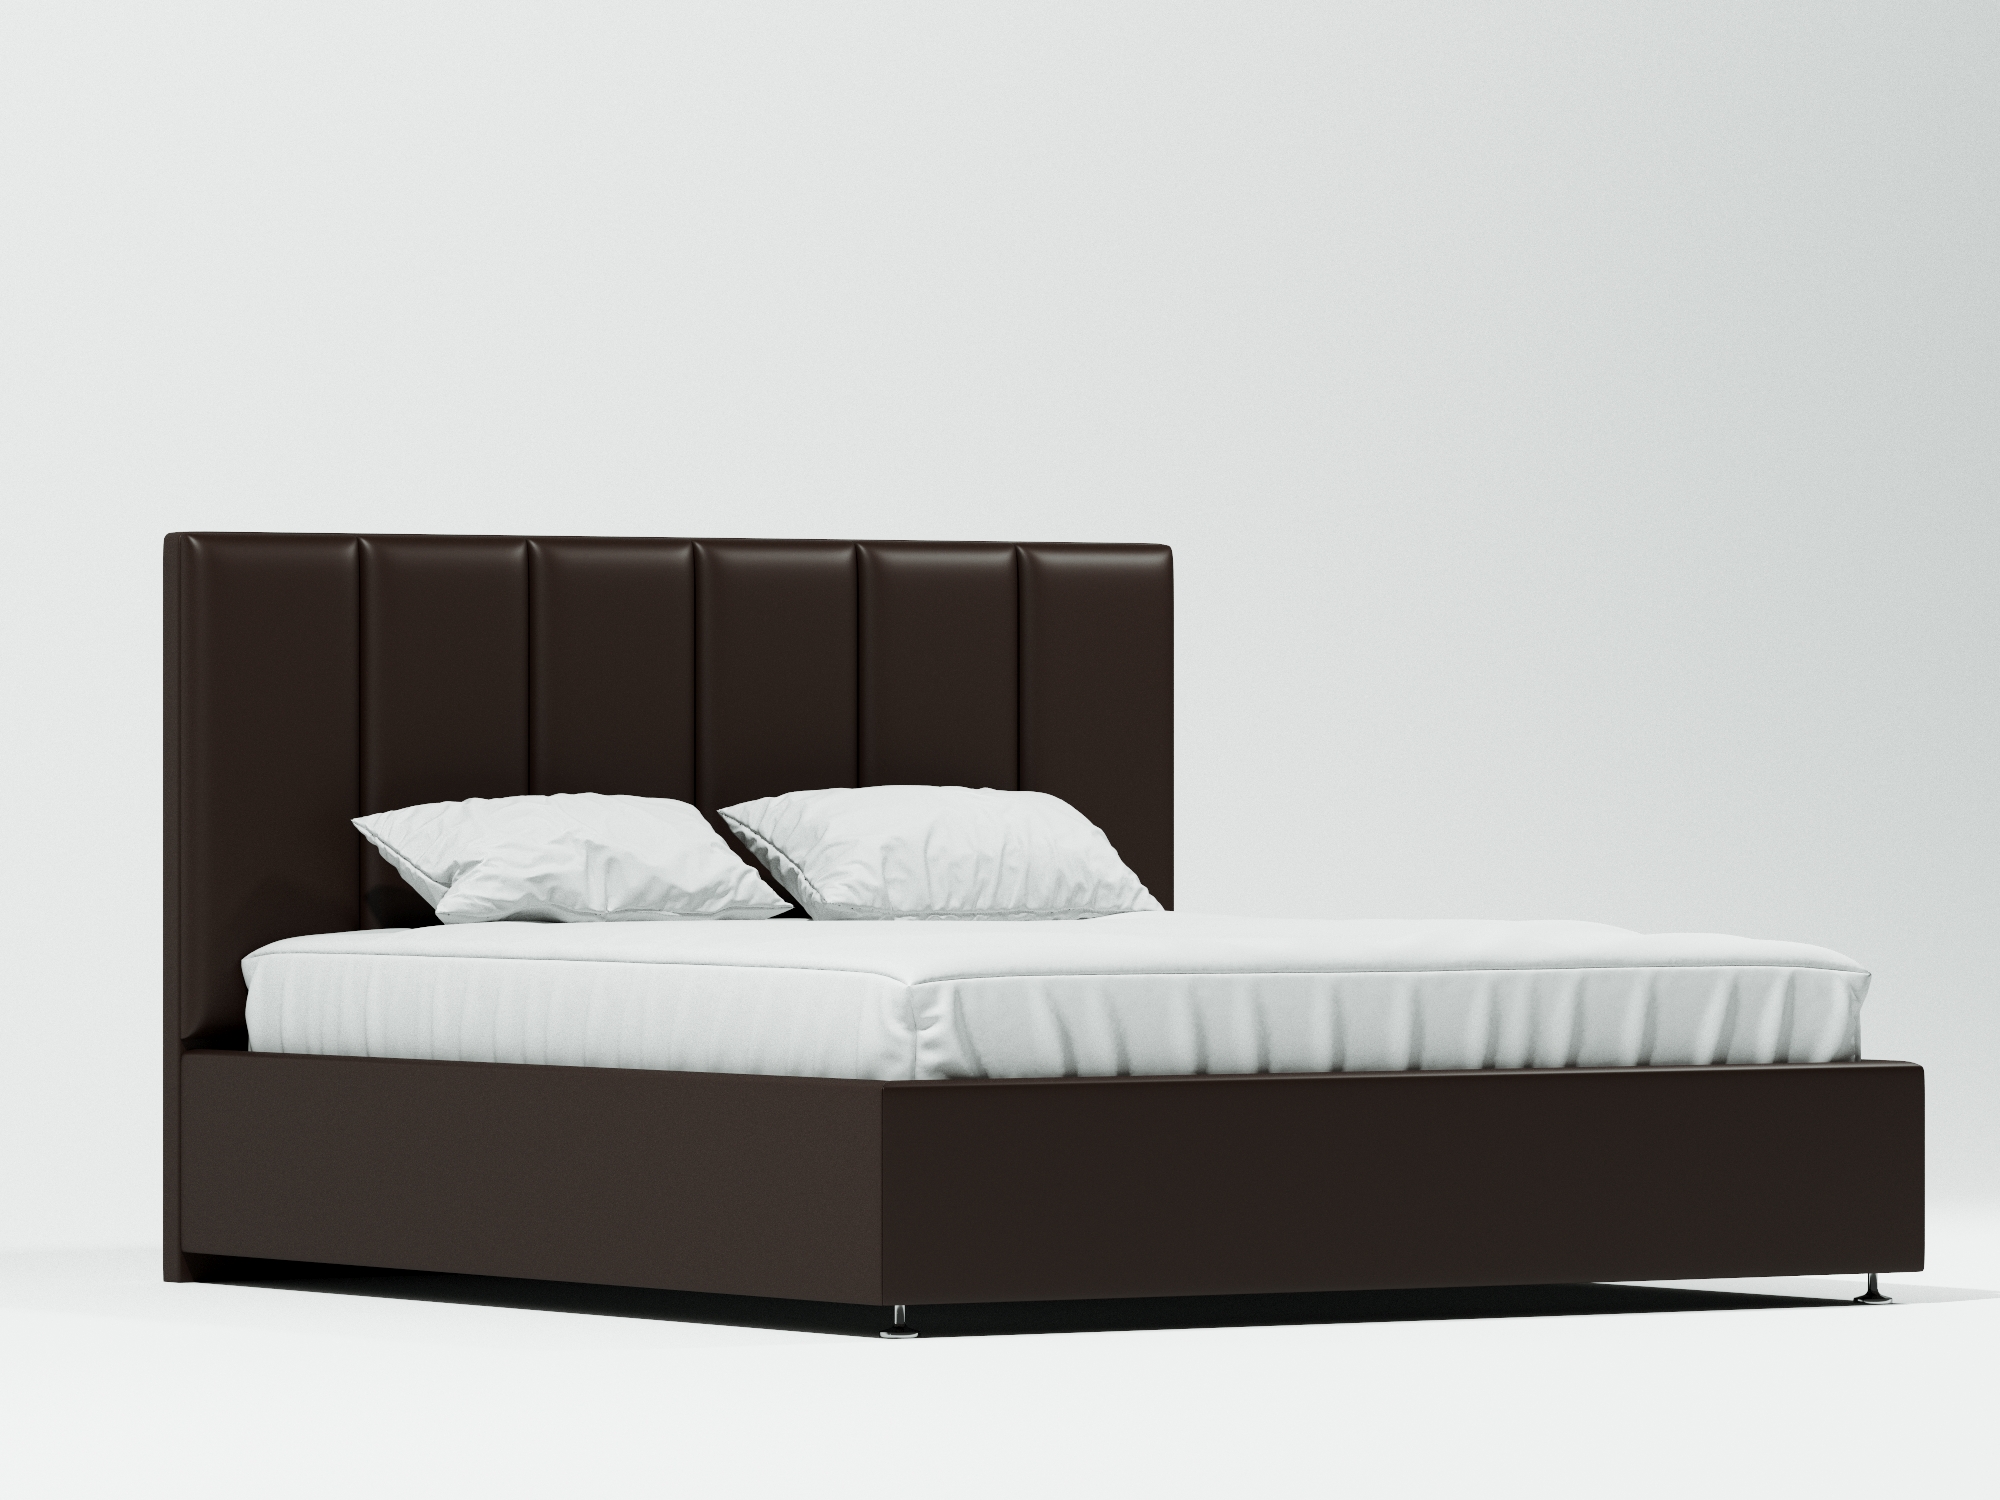 Кровать Терзо Плюс (120х200) Венге, ДСП, МДФ кровать кровать терзо плюс 120х200 терзо